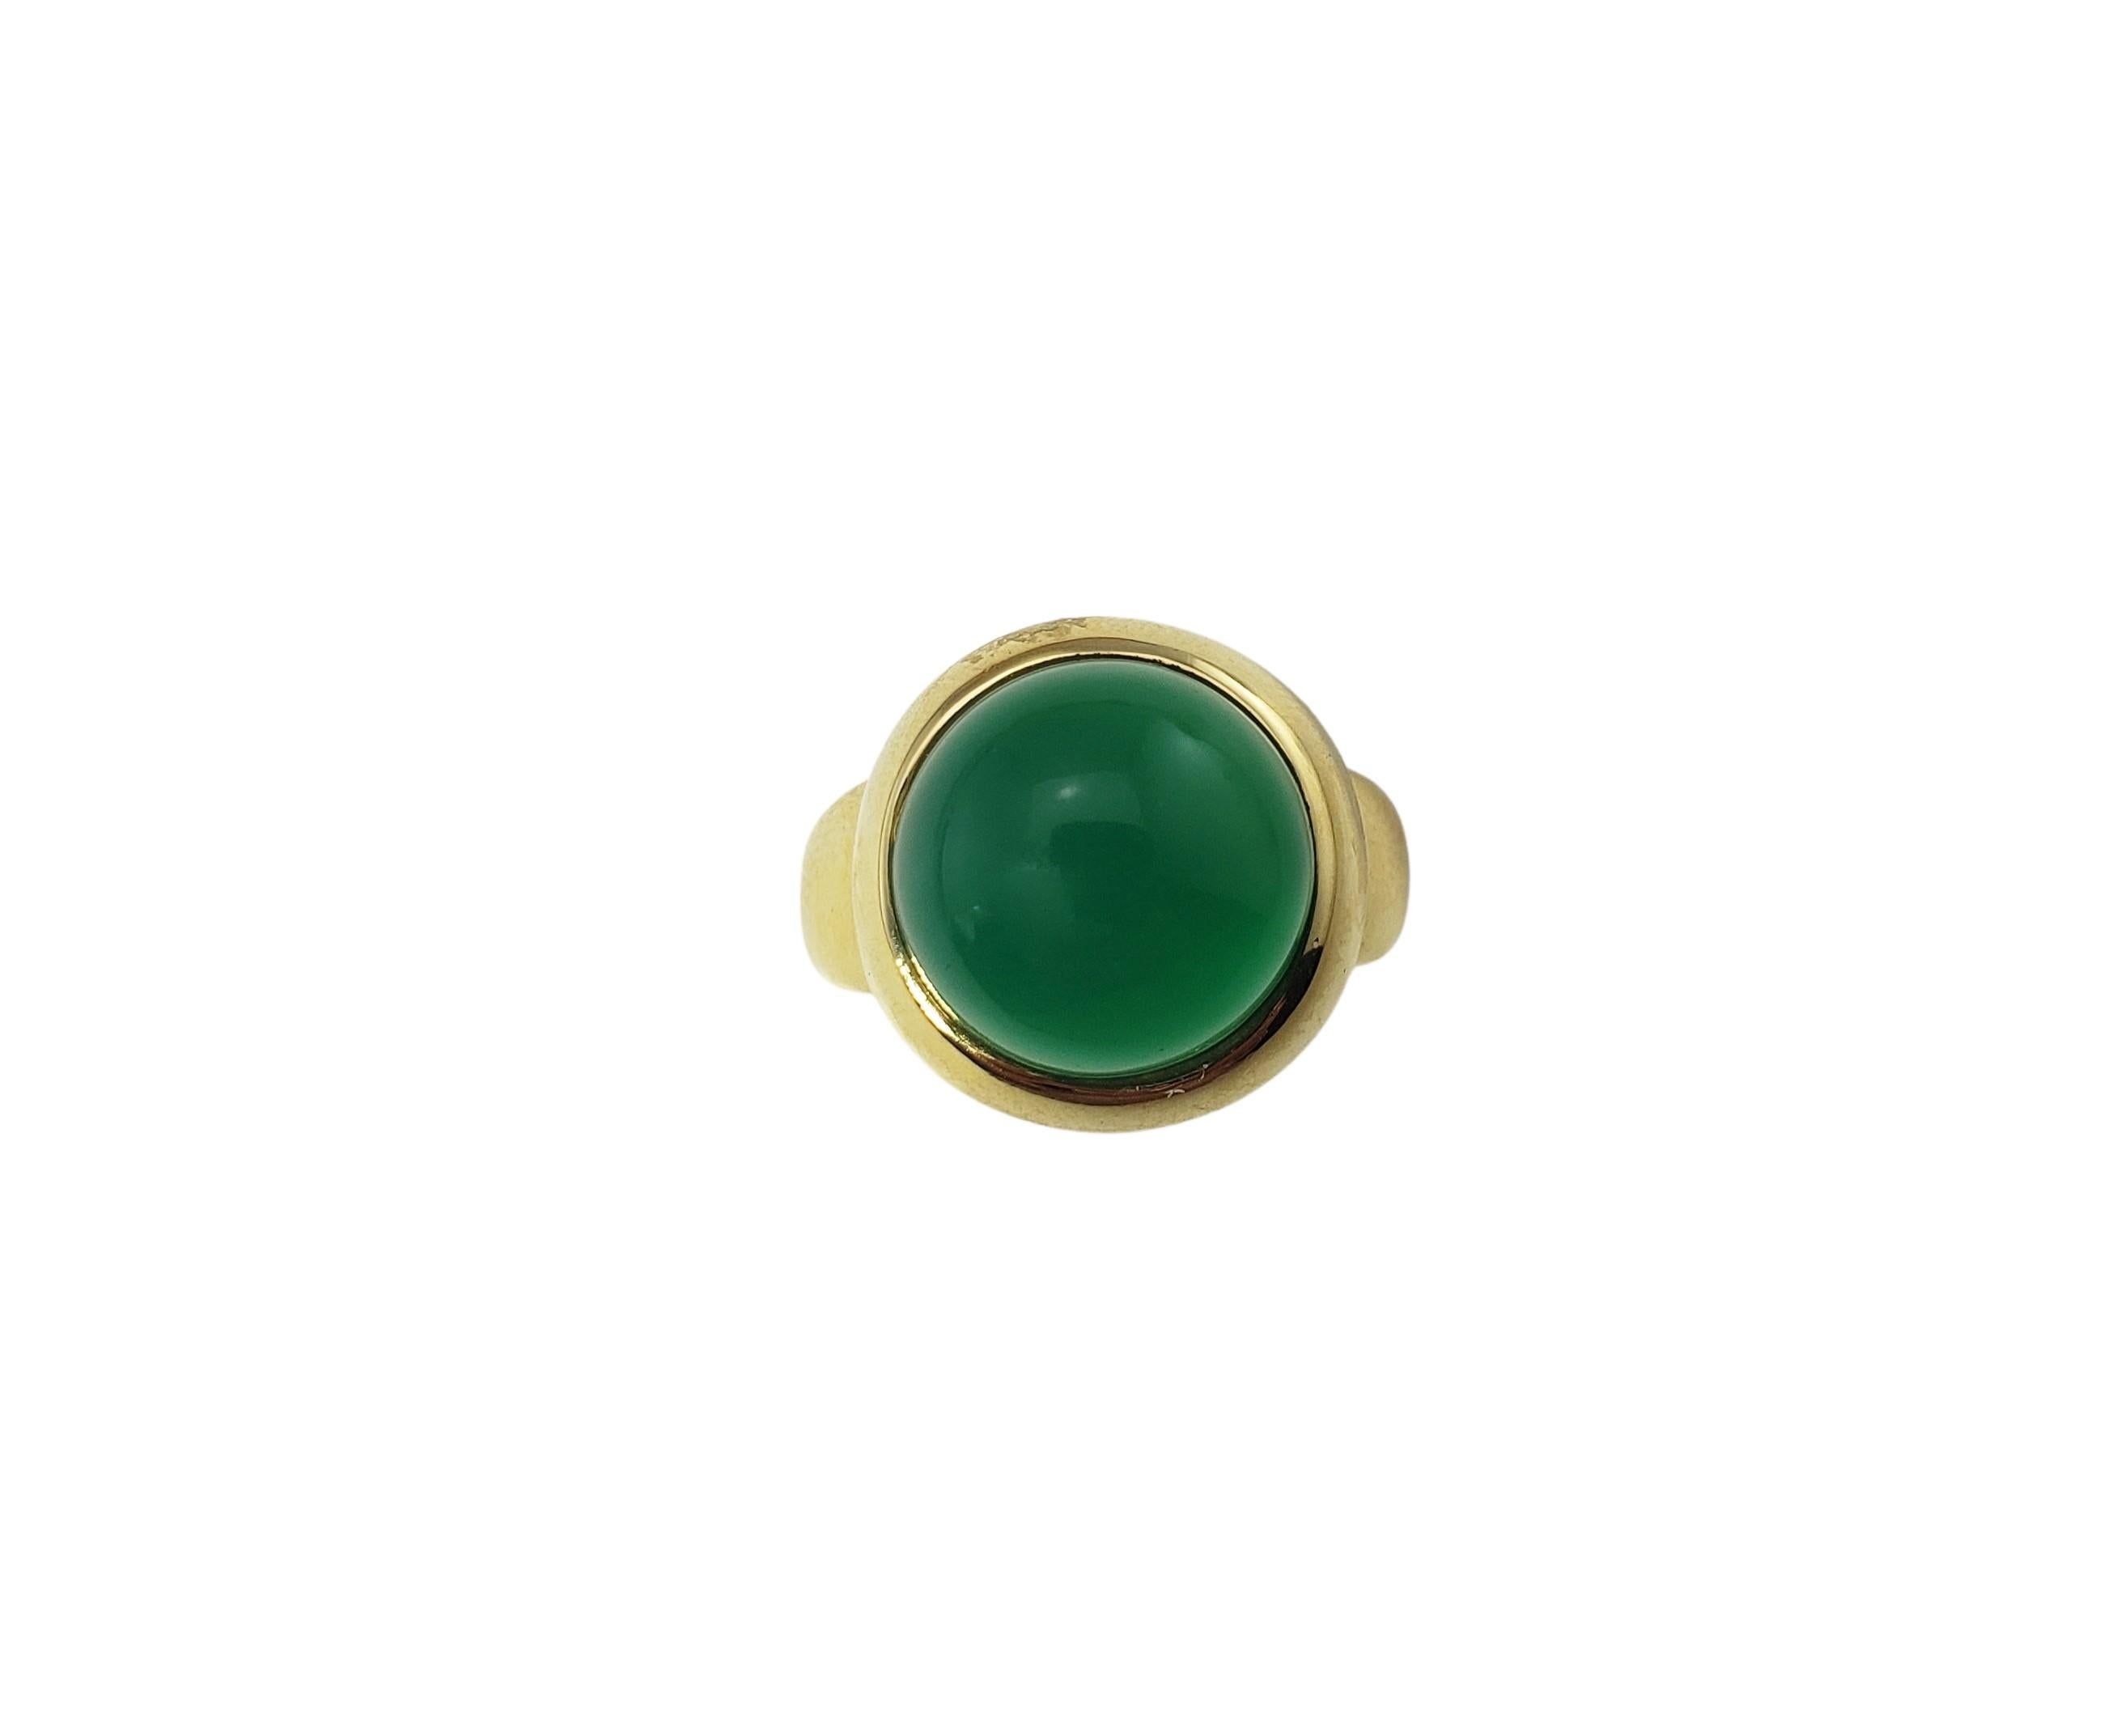 Vintage 18 Karat Gelbgold Grün Onyx Ring Größe 6.5-

Dieser elegante Ring besteht aus einem grünen Onyx-Cabochon (12 mm), der in klassisches 18-karätiges Gelbgold gefasst ist. Breite: 11 mm. Schaft: 4 mm.

Ring Größe: 6.5

Gewicht: 6,8 dwt. / 10,6